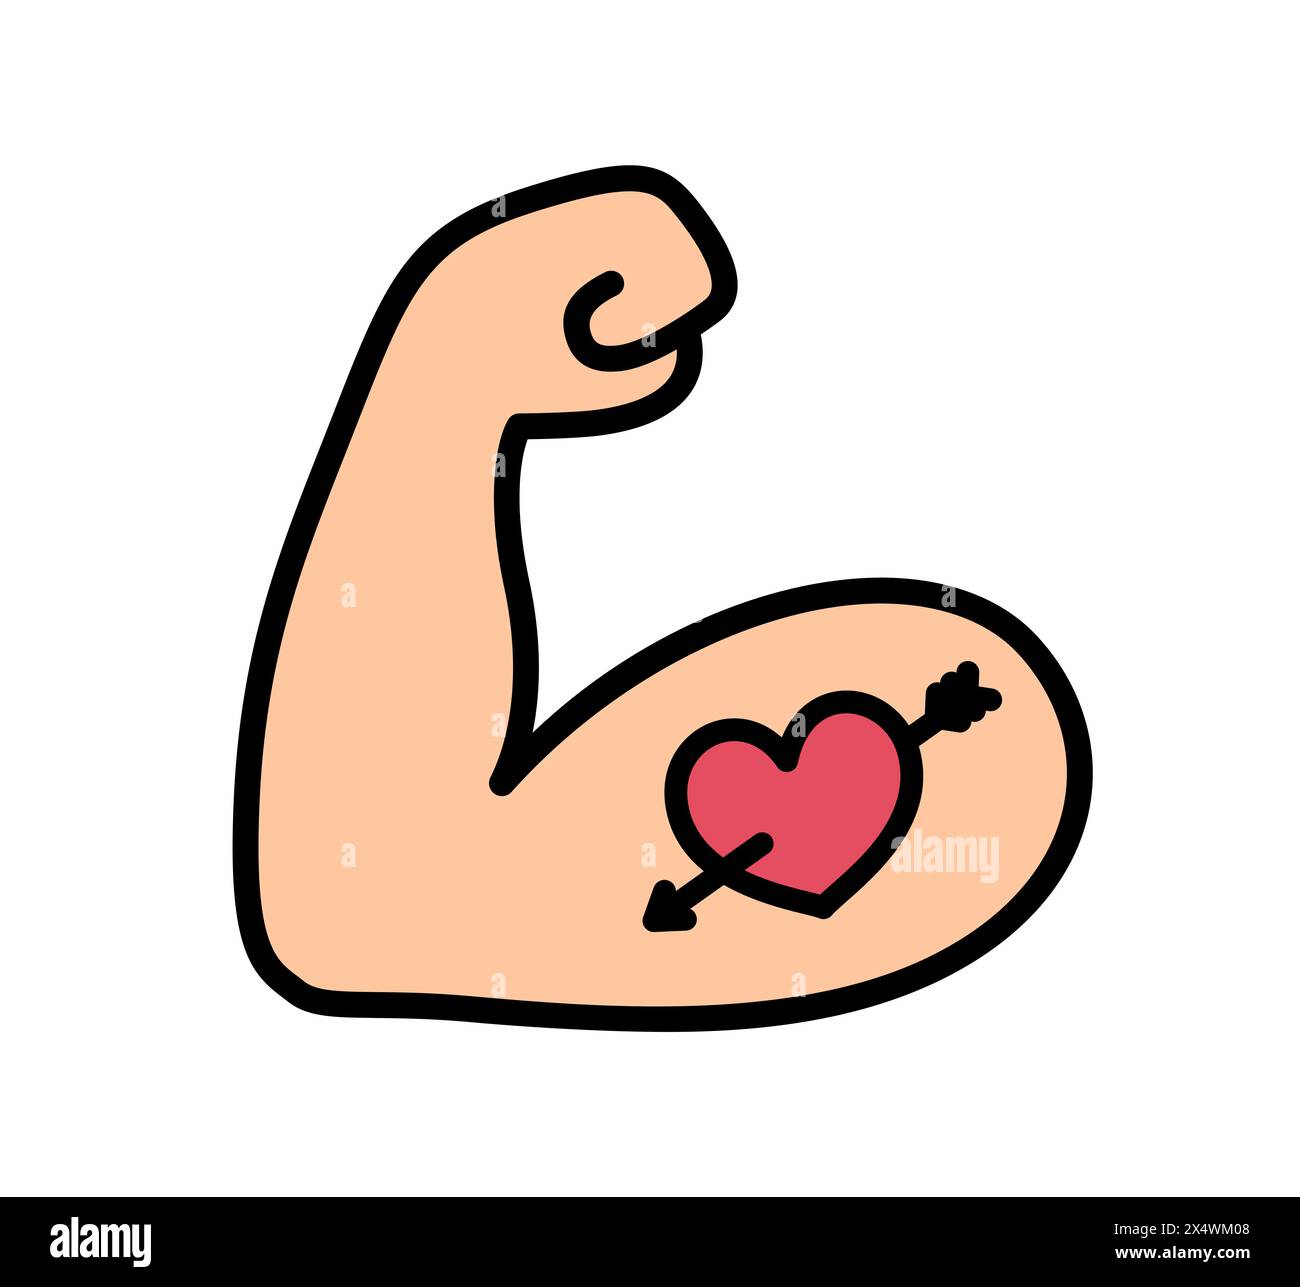 Flexibles tätowiertes Bizeps-Emoji-Symbol. Kräftiger Muskelarm mit Herz- und Pfeiltattoo, Zeichentricklinie-Symbol. Vektor Hand gezeichnete Kritzelillustration. Stock Vektor